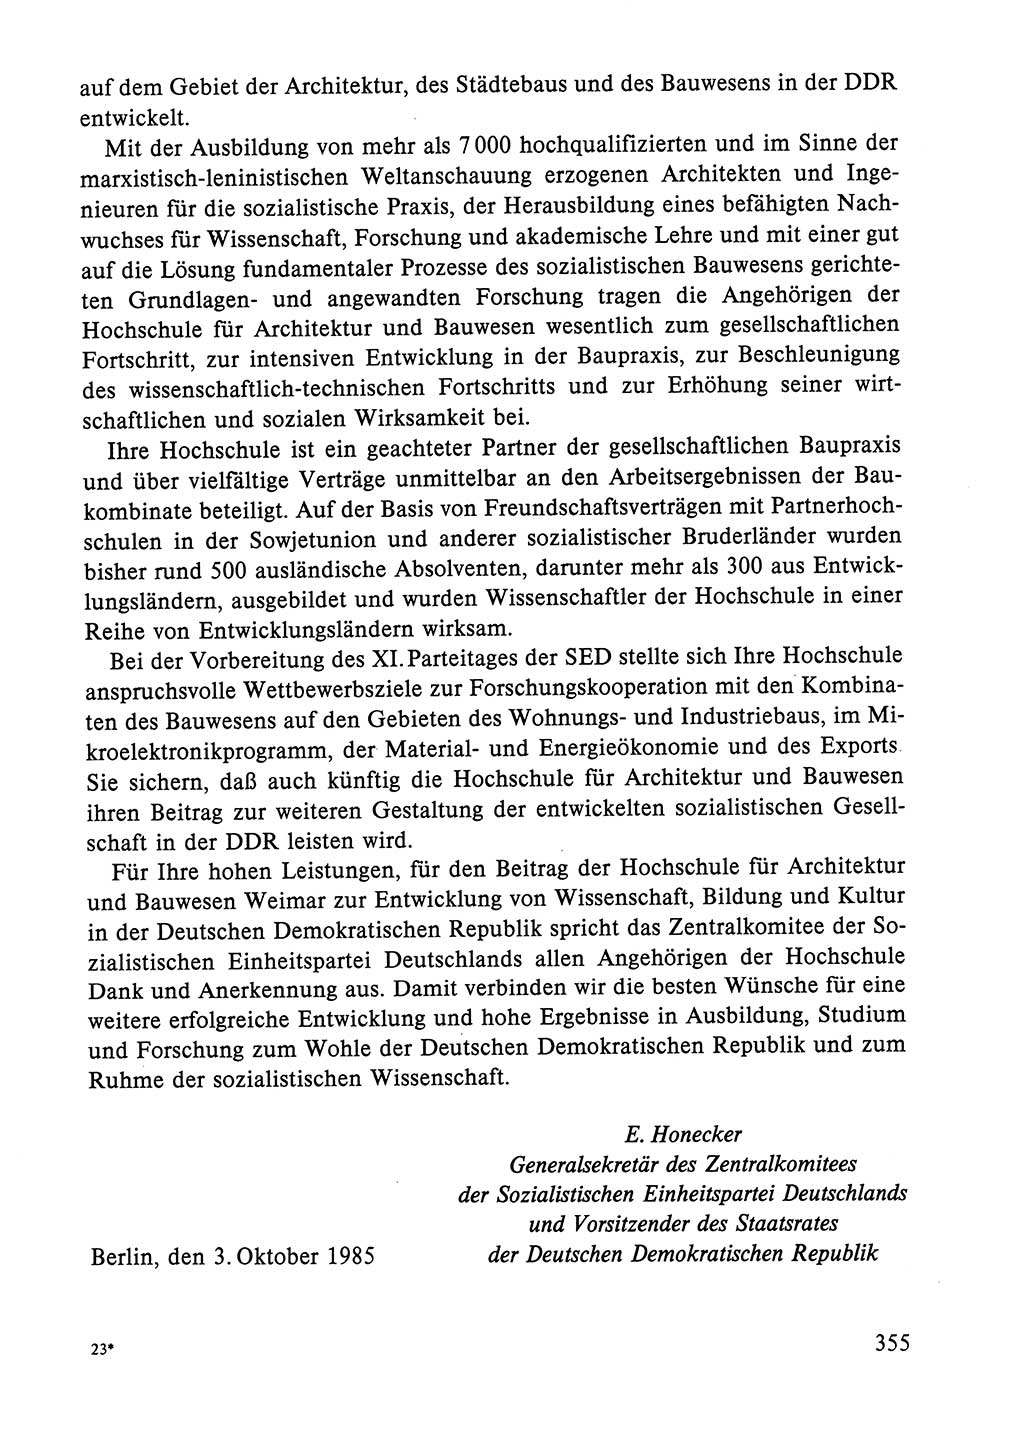 Dokumente der Sozialistischen Einheitspartei Deutschlands (SED) [Deutsche Demokratische Republik (DDR)] 1984-1985, Seite 355 (Dok. SED DDR 1984-1985, S. 355)